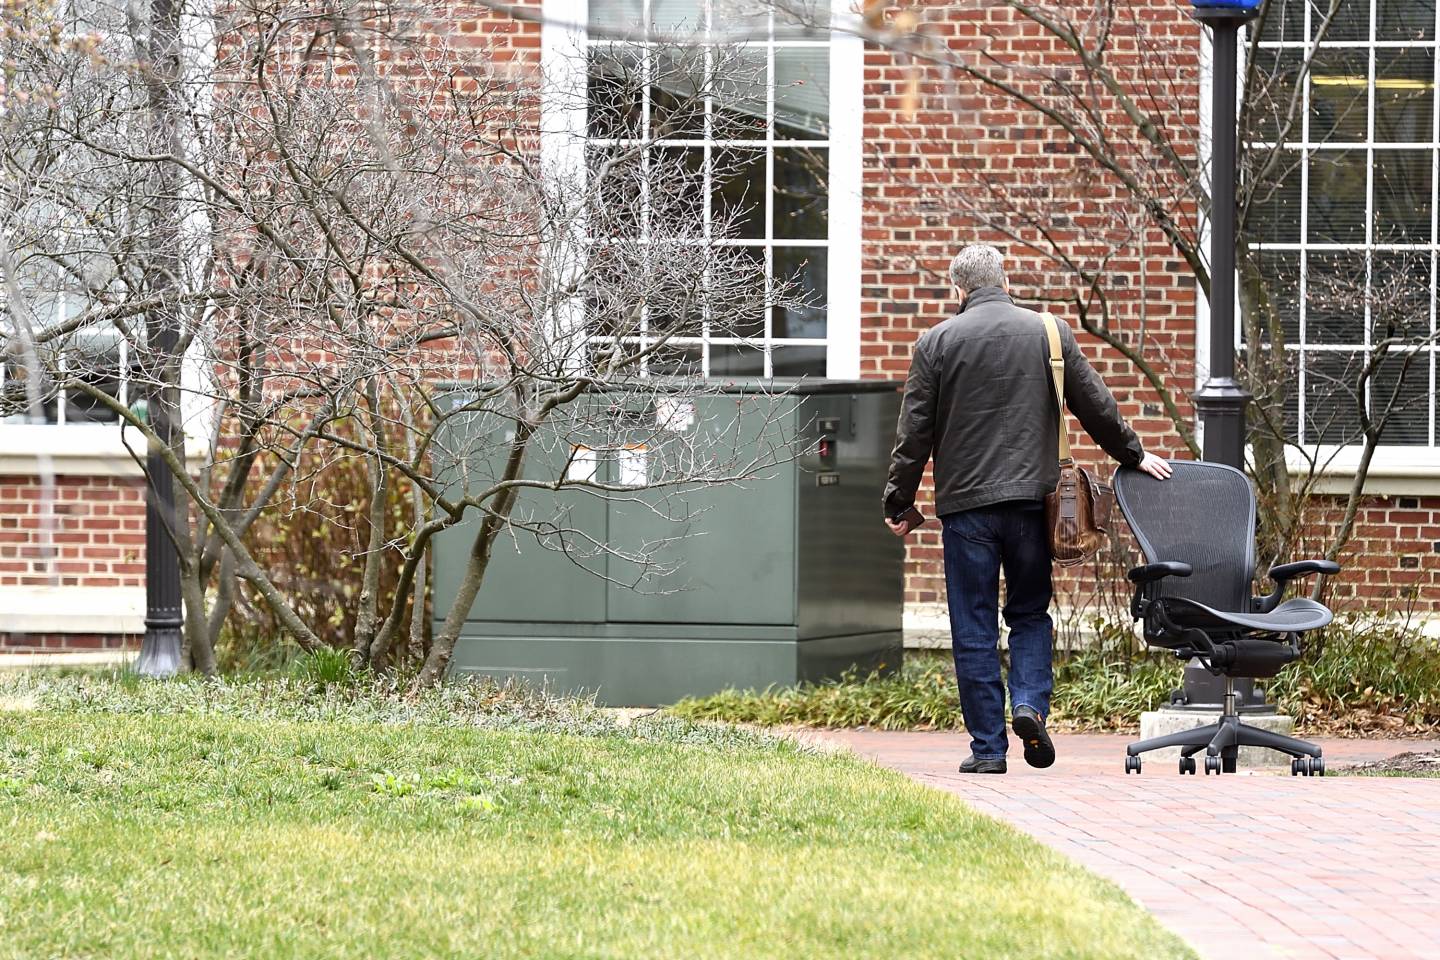 A man wheels a chair behind him as he leaves campus